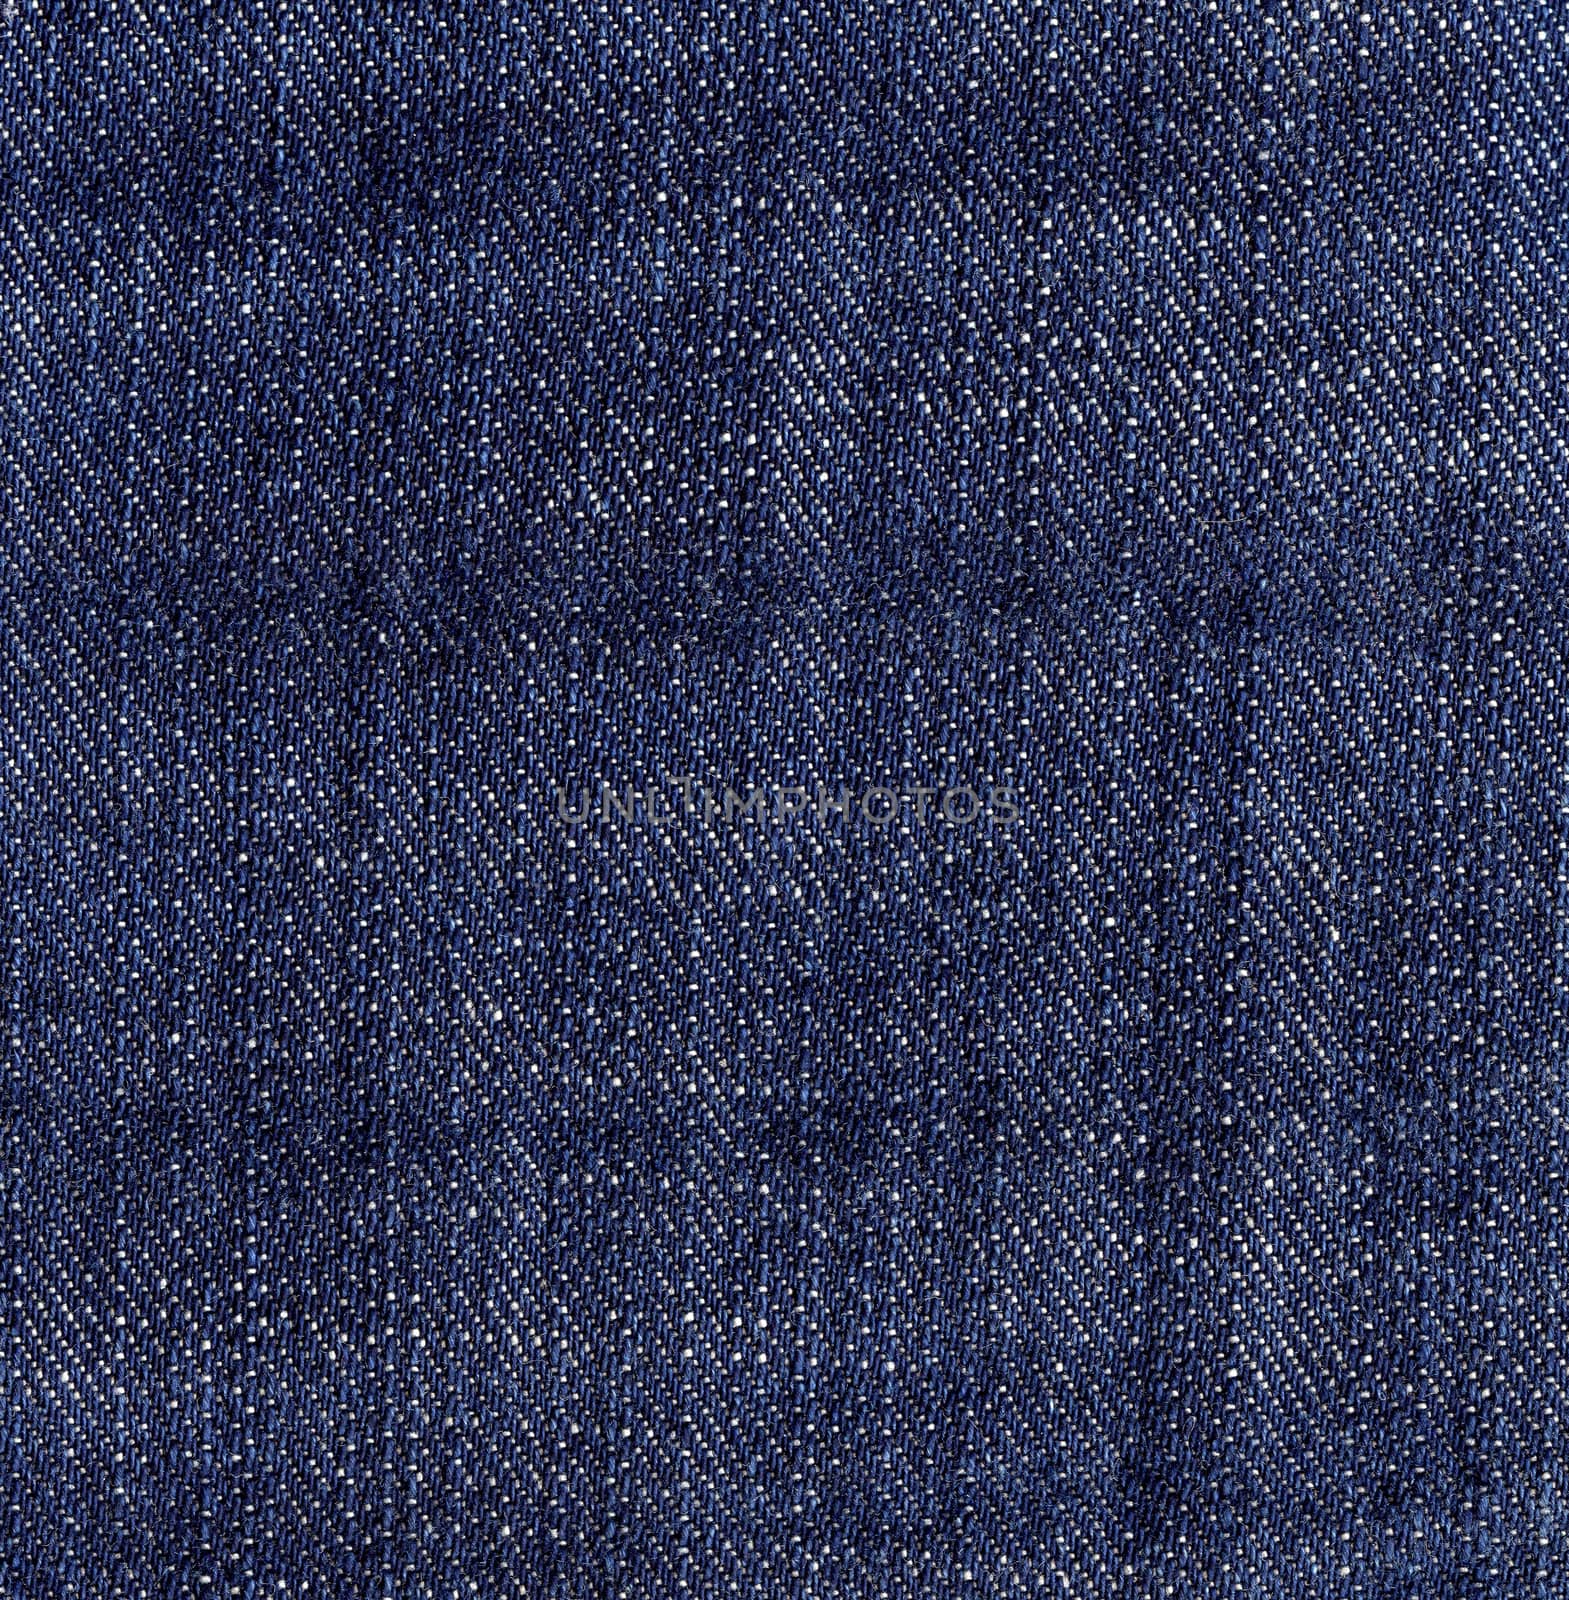 Dark Blue Jeans Denim Texture.